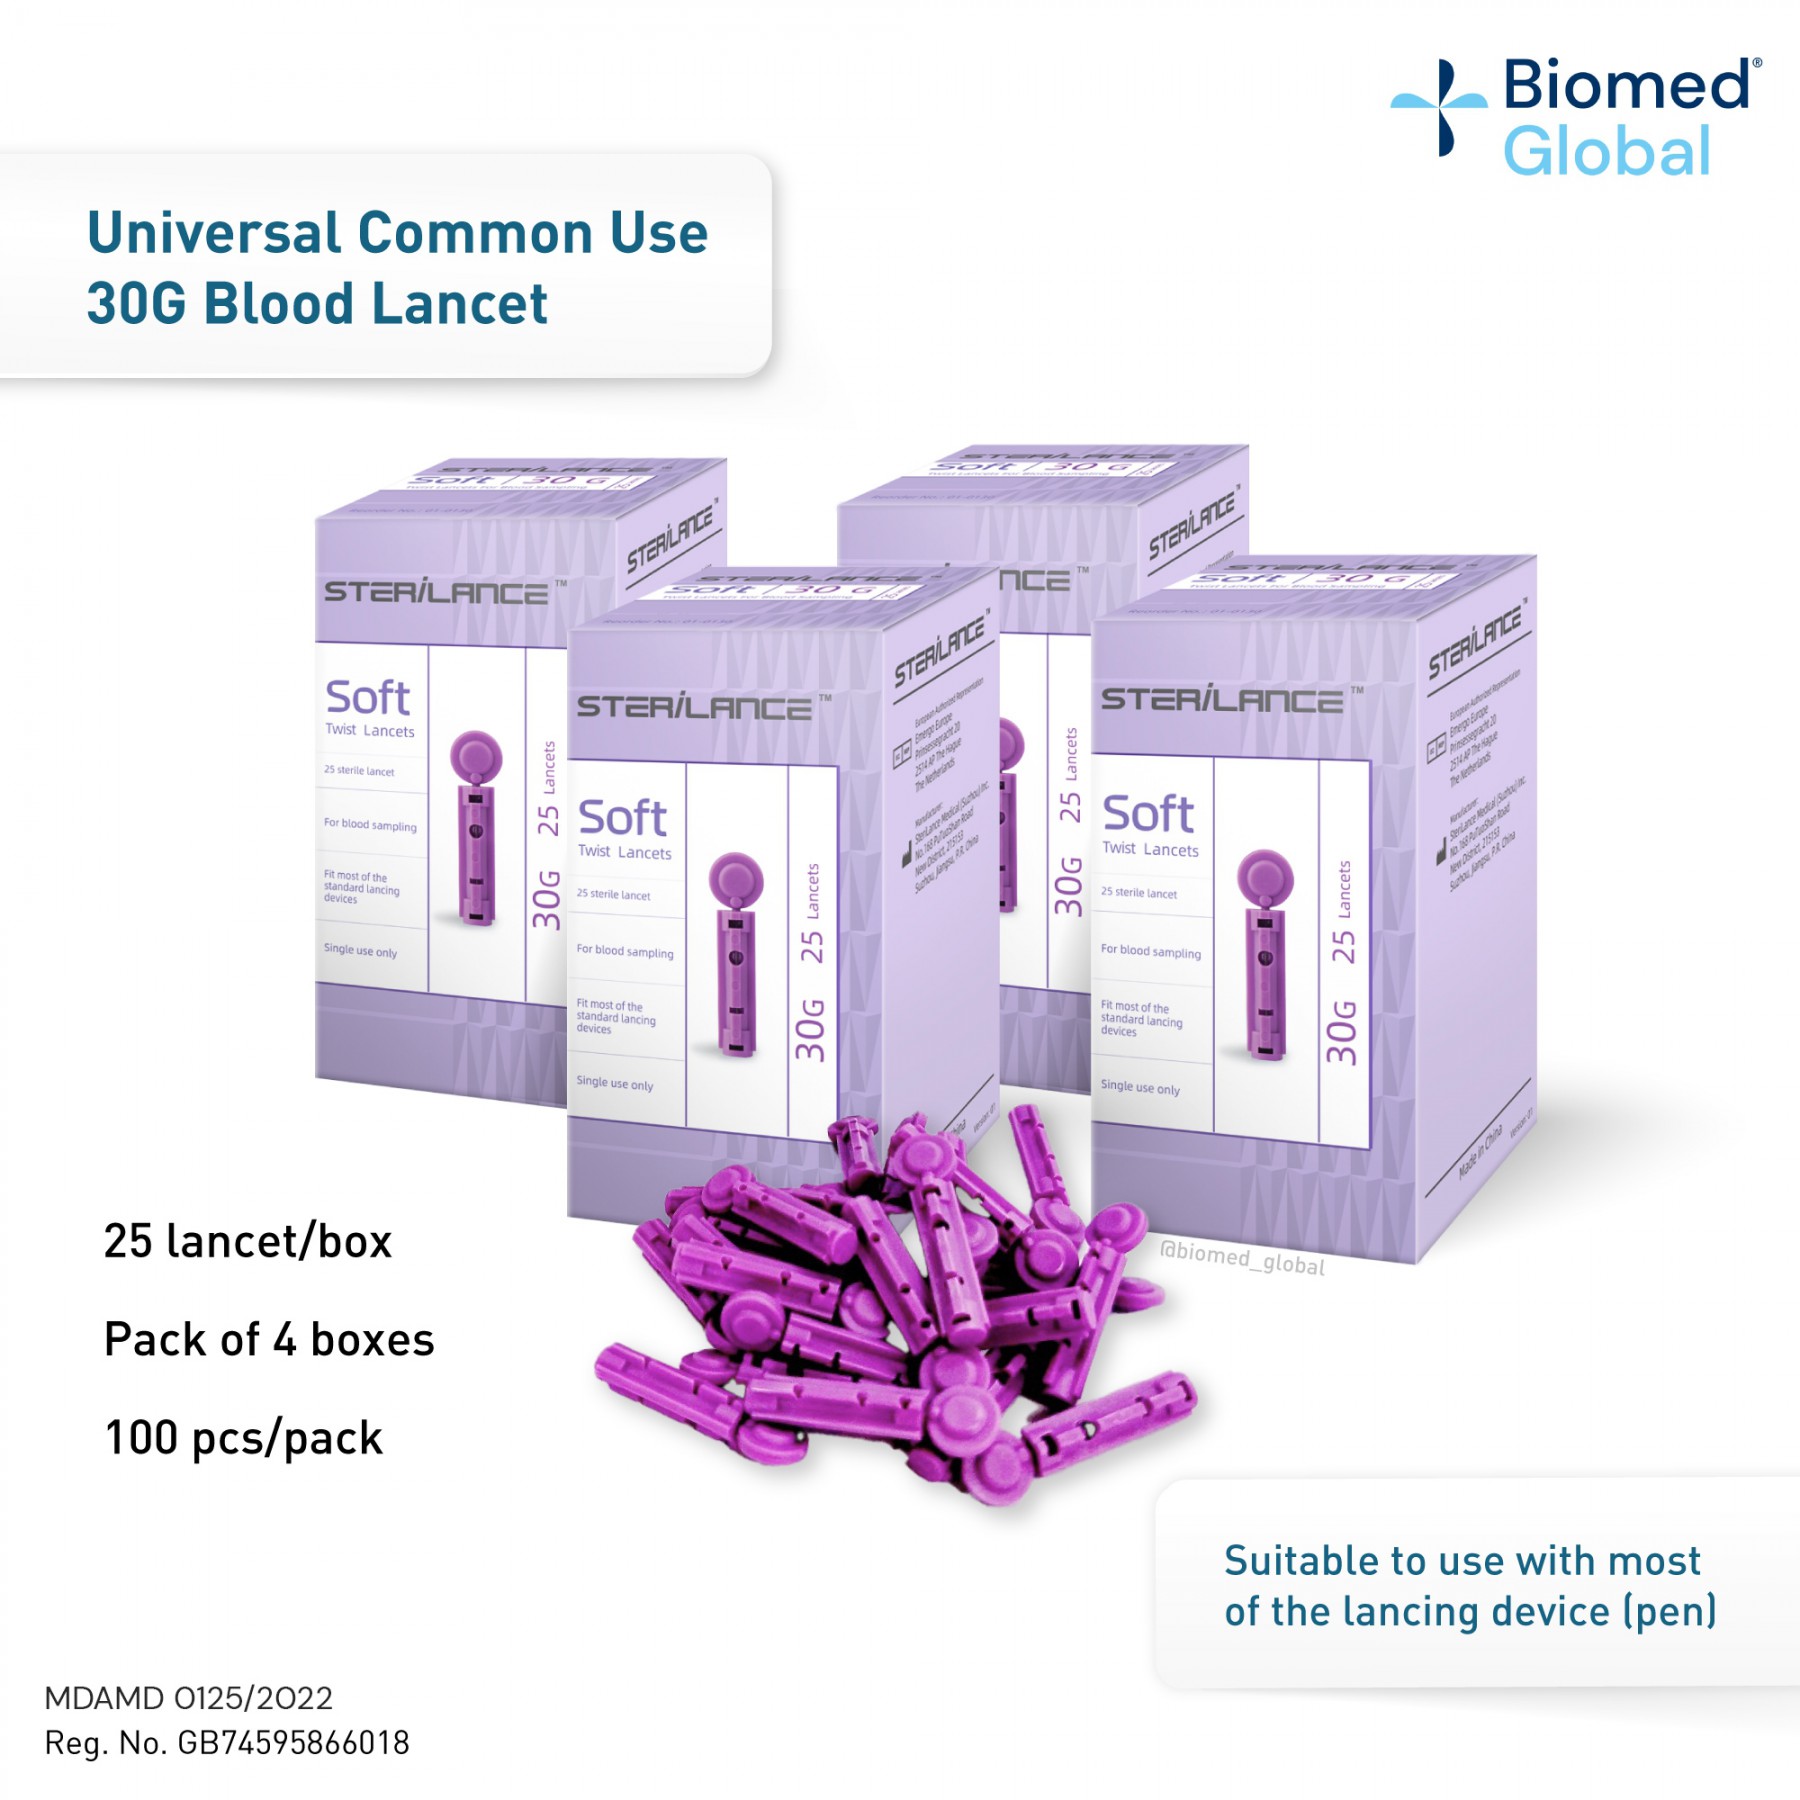 STERILANCE BLOOD LANCET, 30G, 100 PIECES, 25 PCS/BOX, PACK OF 4 BOXES